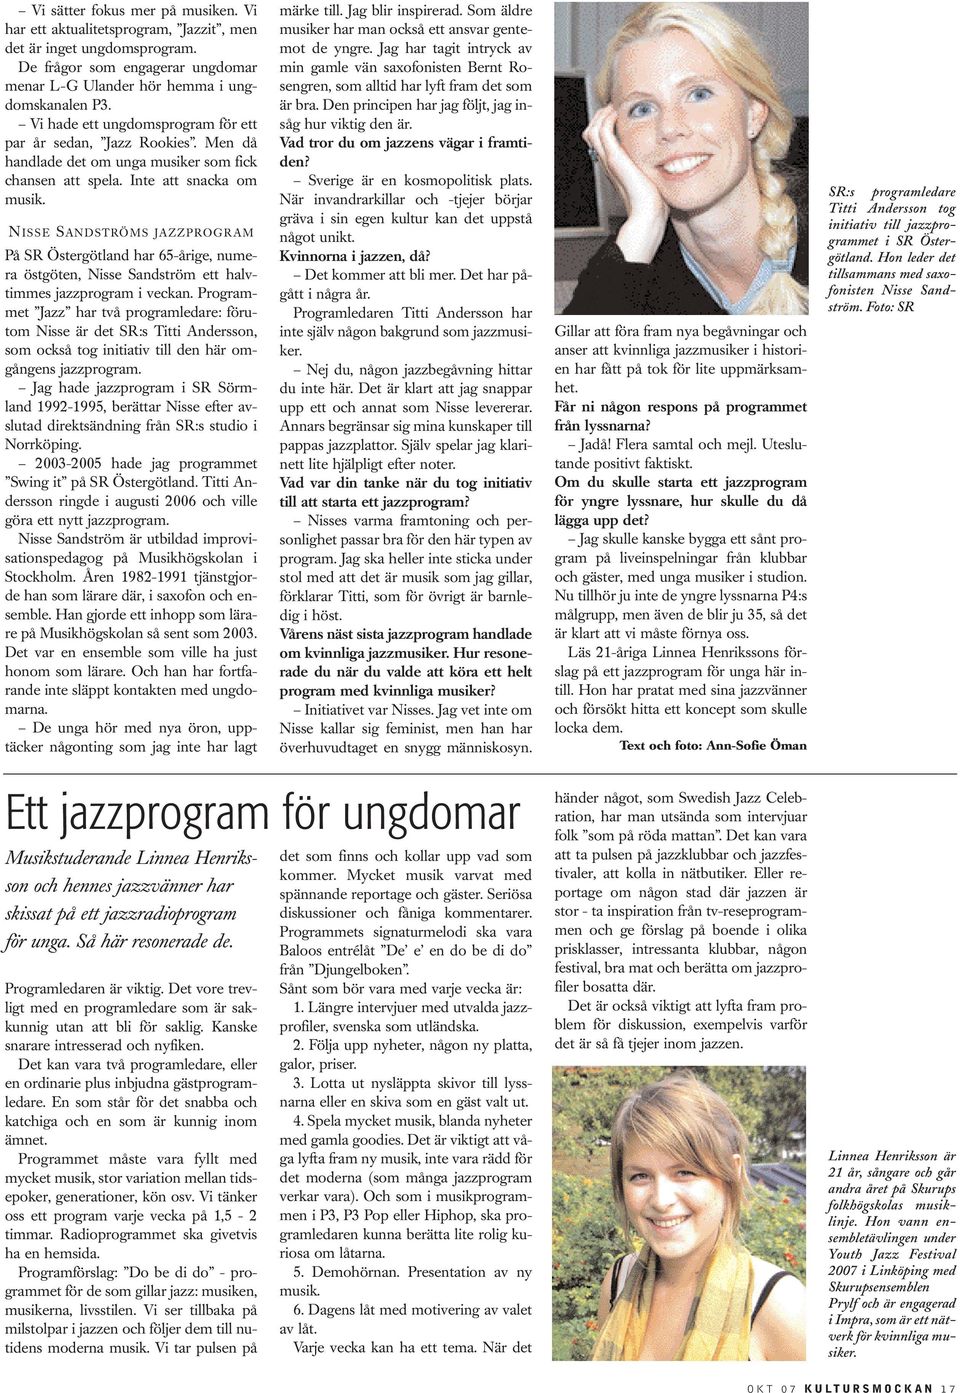 N ISSE SANDSTRÖMS JAZZPROGRAM På SR Östergötland har 65-årige, numera östgöten, Nisse Sandström ett halvtimmes jazzprogram i veckan.